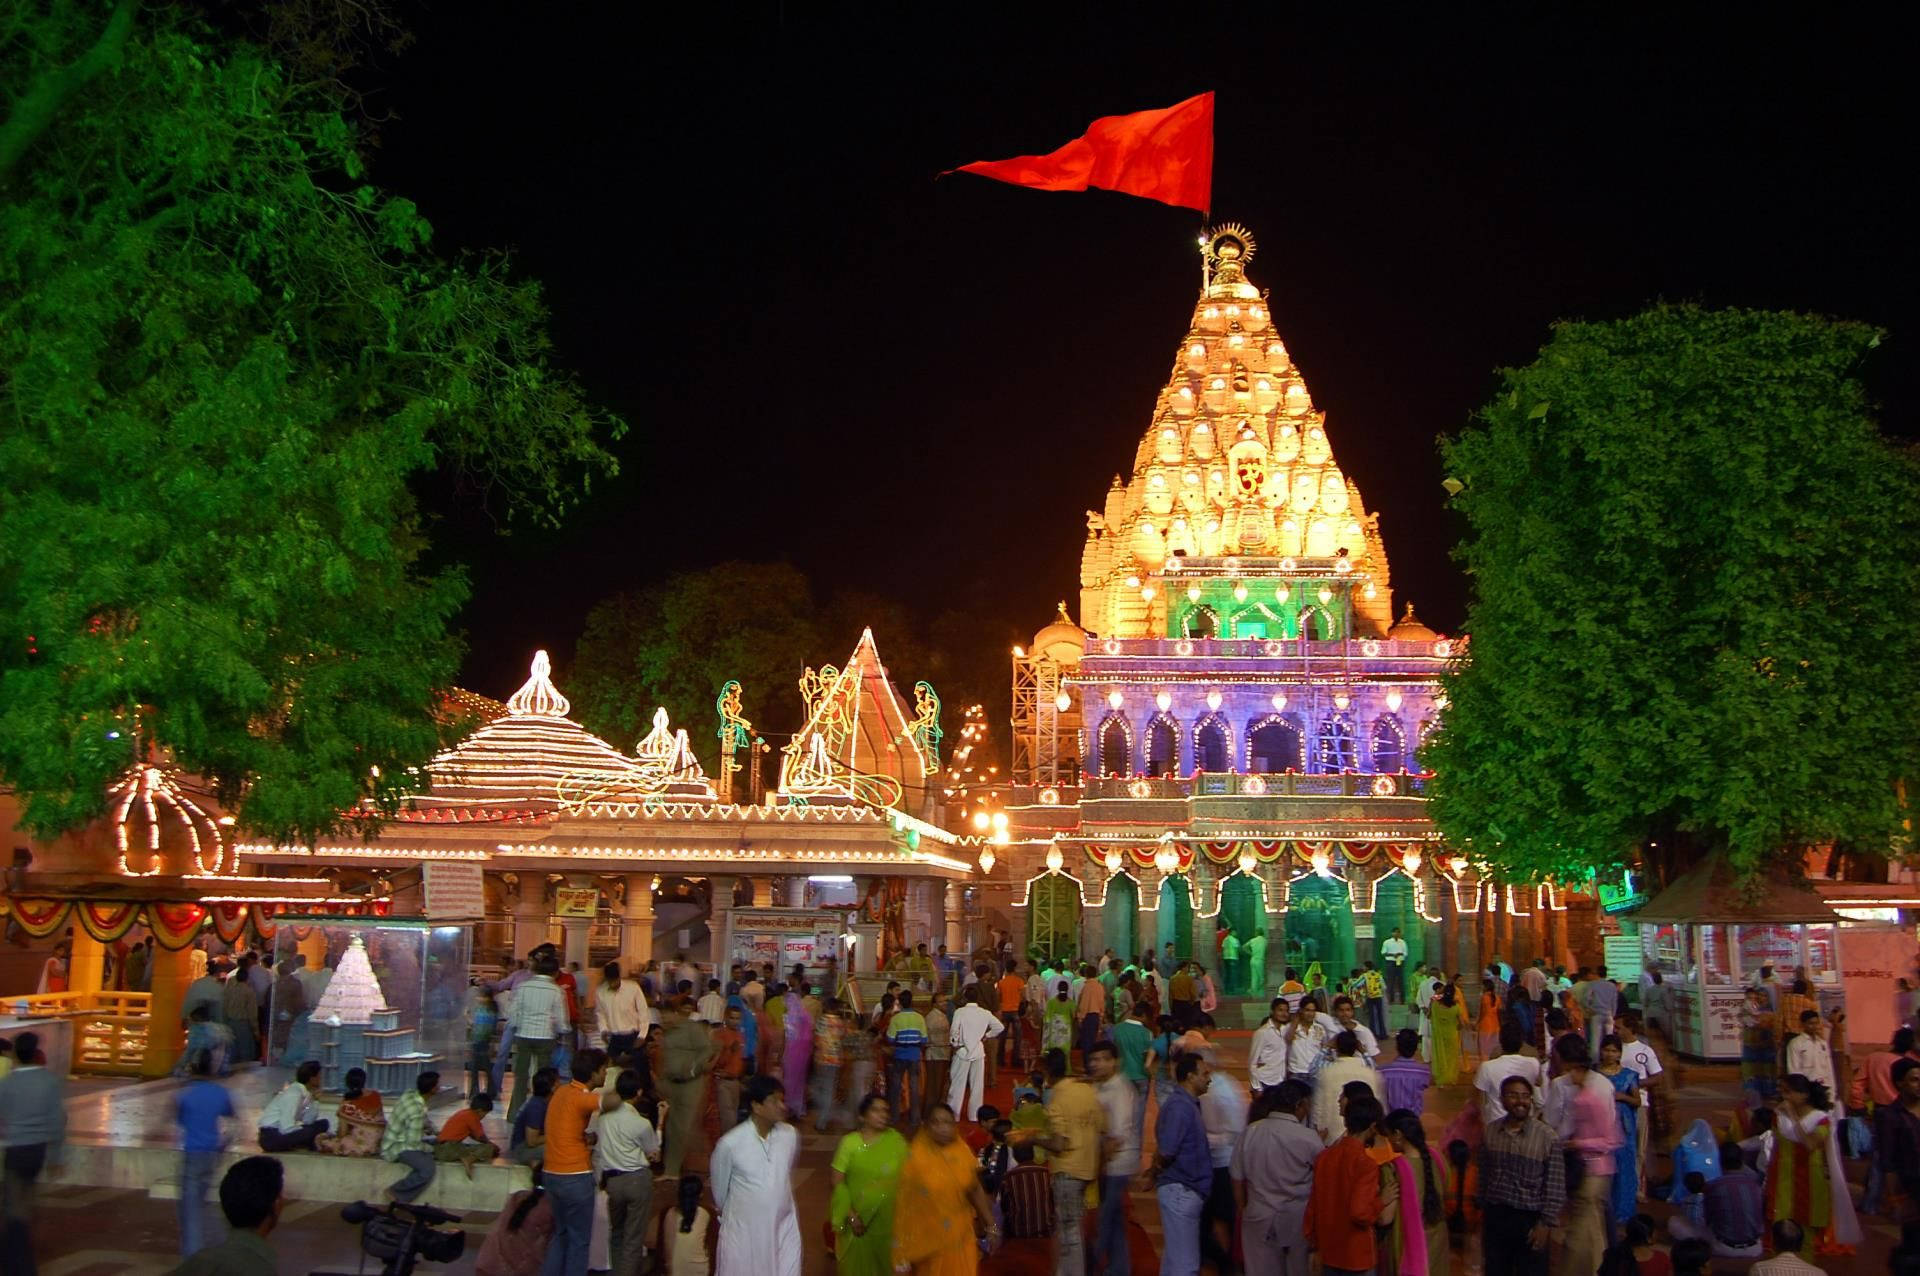 Papel De Parede Do Templo Mahakal Em Ujjain À Noite Papel de Parede